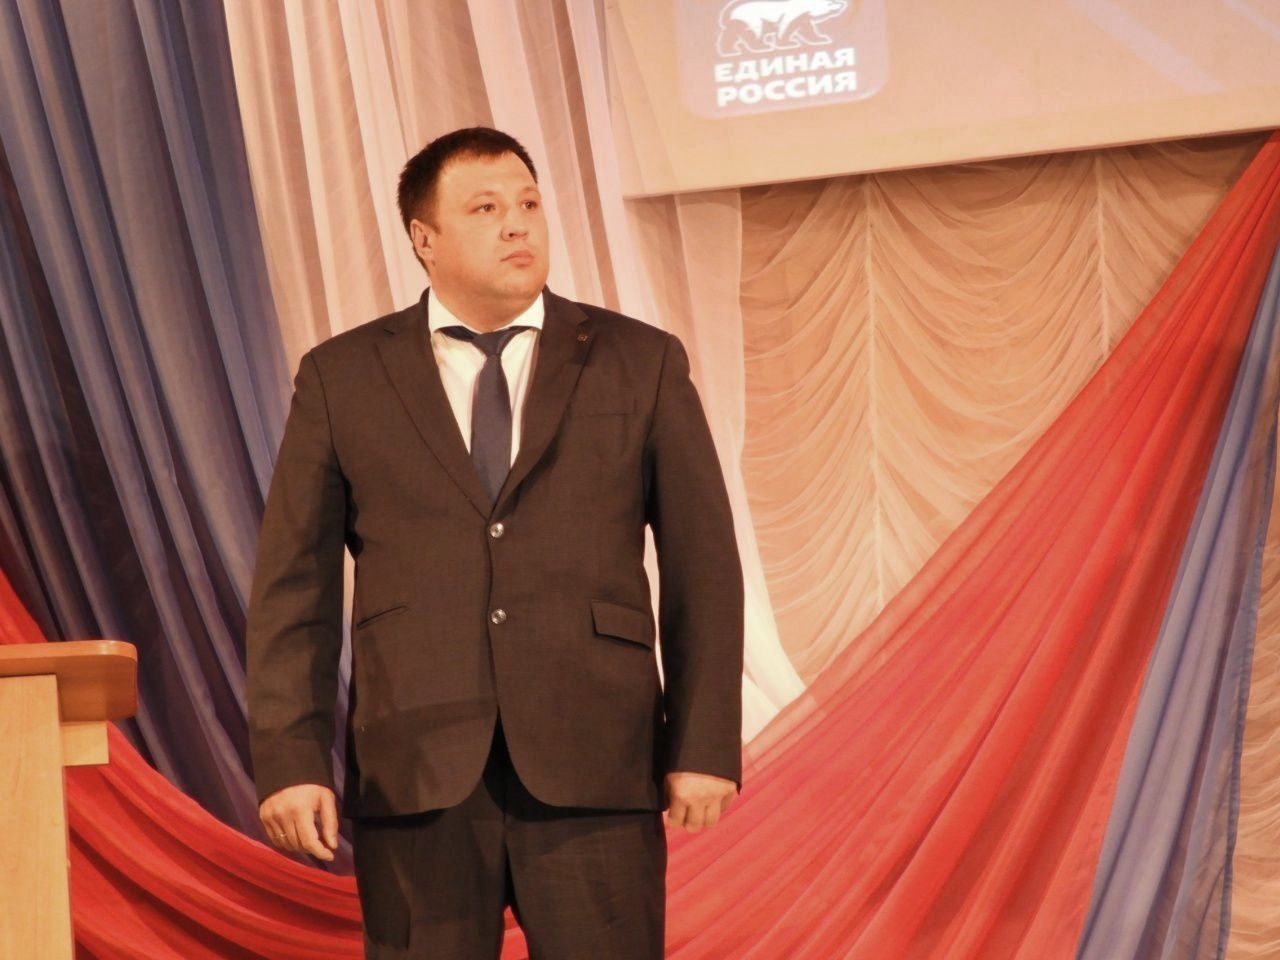 Глава Волчанска запустил горячую линию по вопросам образования. Все проблемы будет решать лично